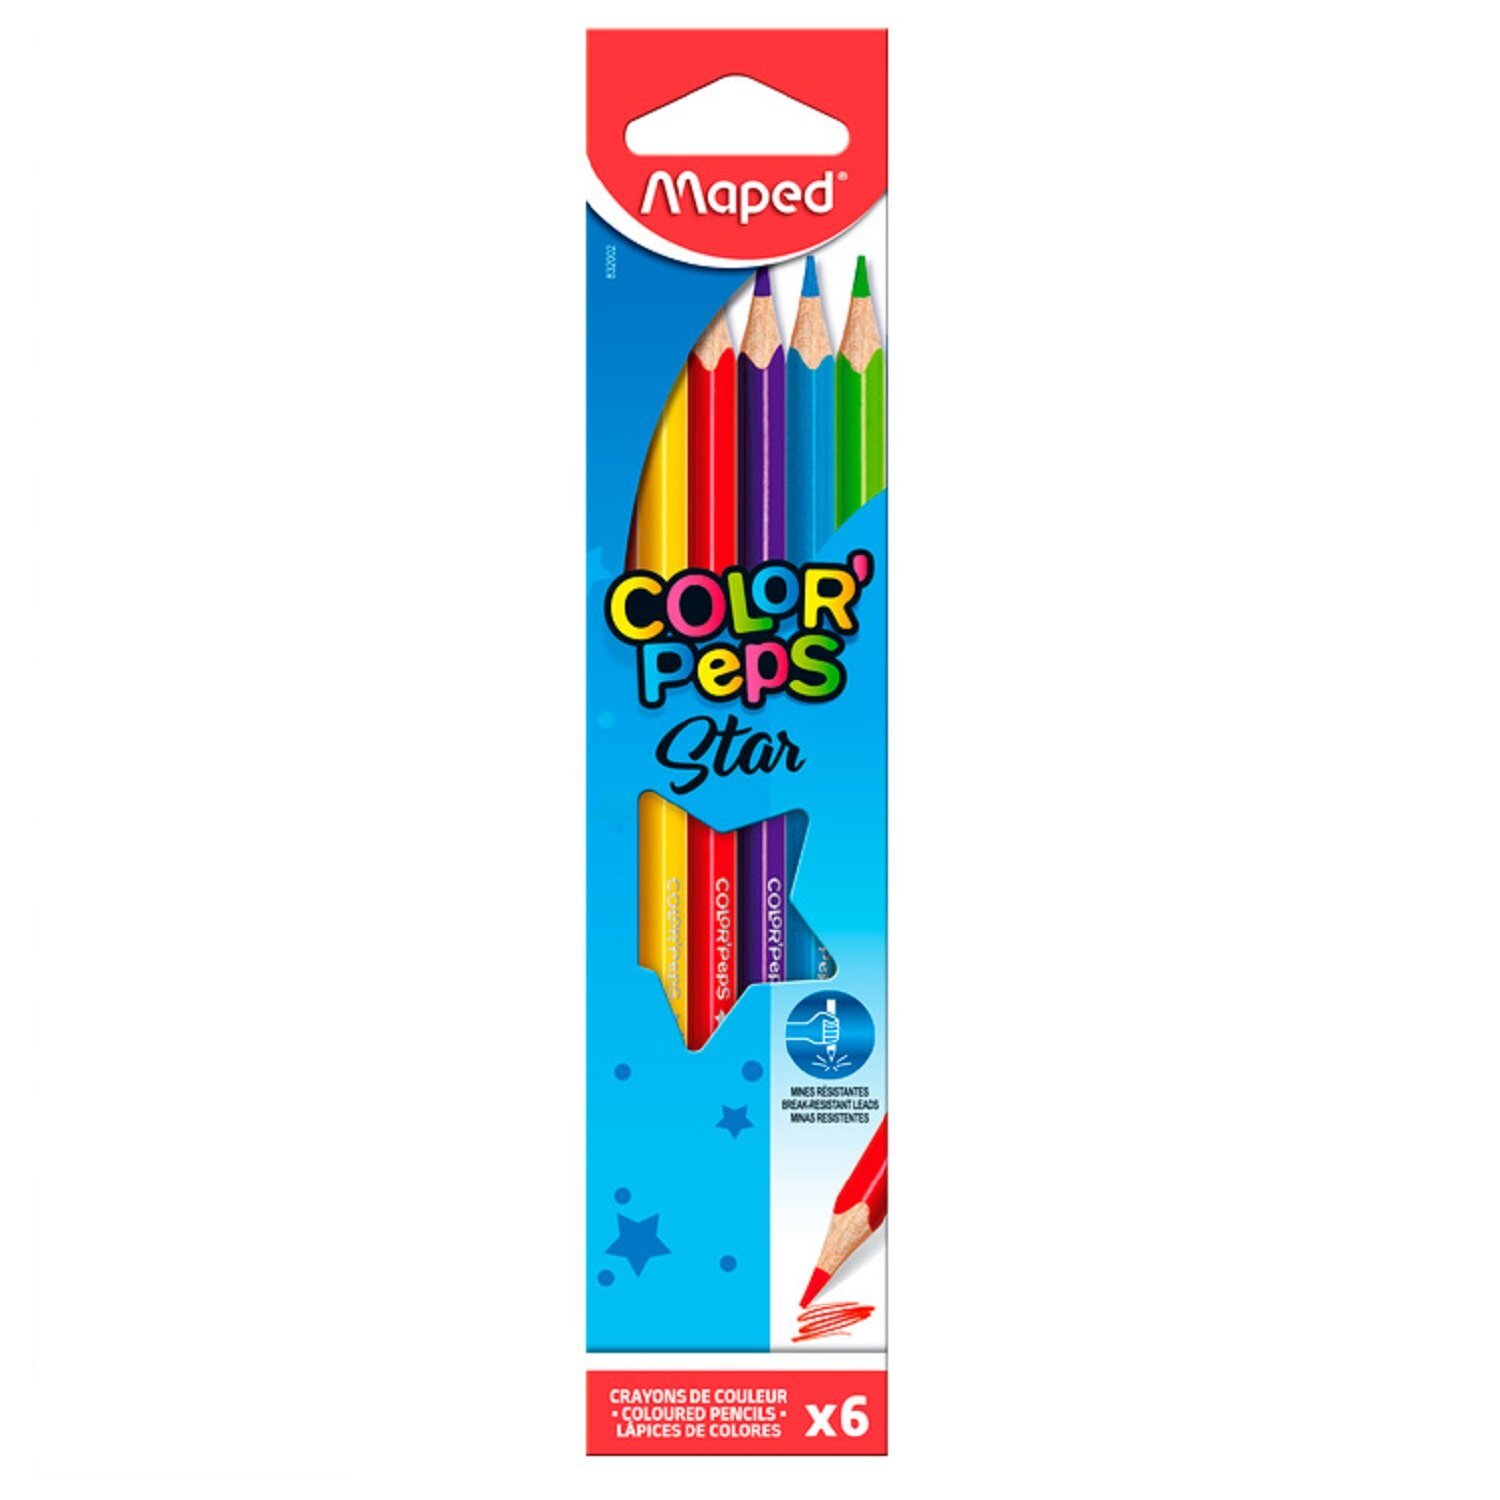 Цветные карандаши 6. Карандаши Maped Color Peps 72. Maped цветные карандаши Color Peps 6 цветов. Maped Color Peps карандаши. Maped Color Peps Star 72 Color 832072.